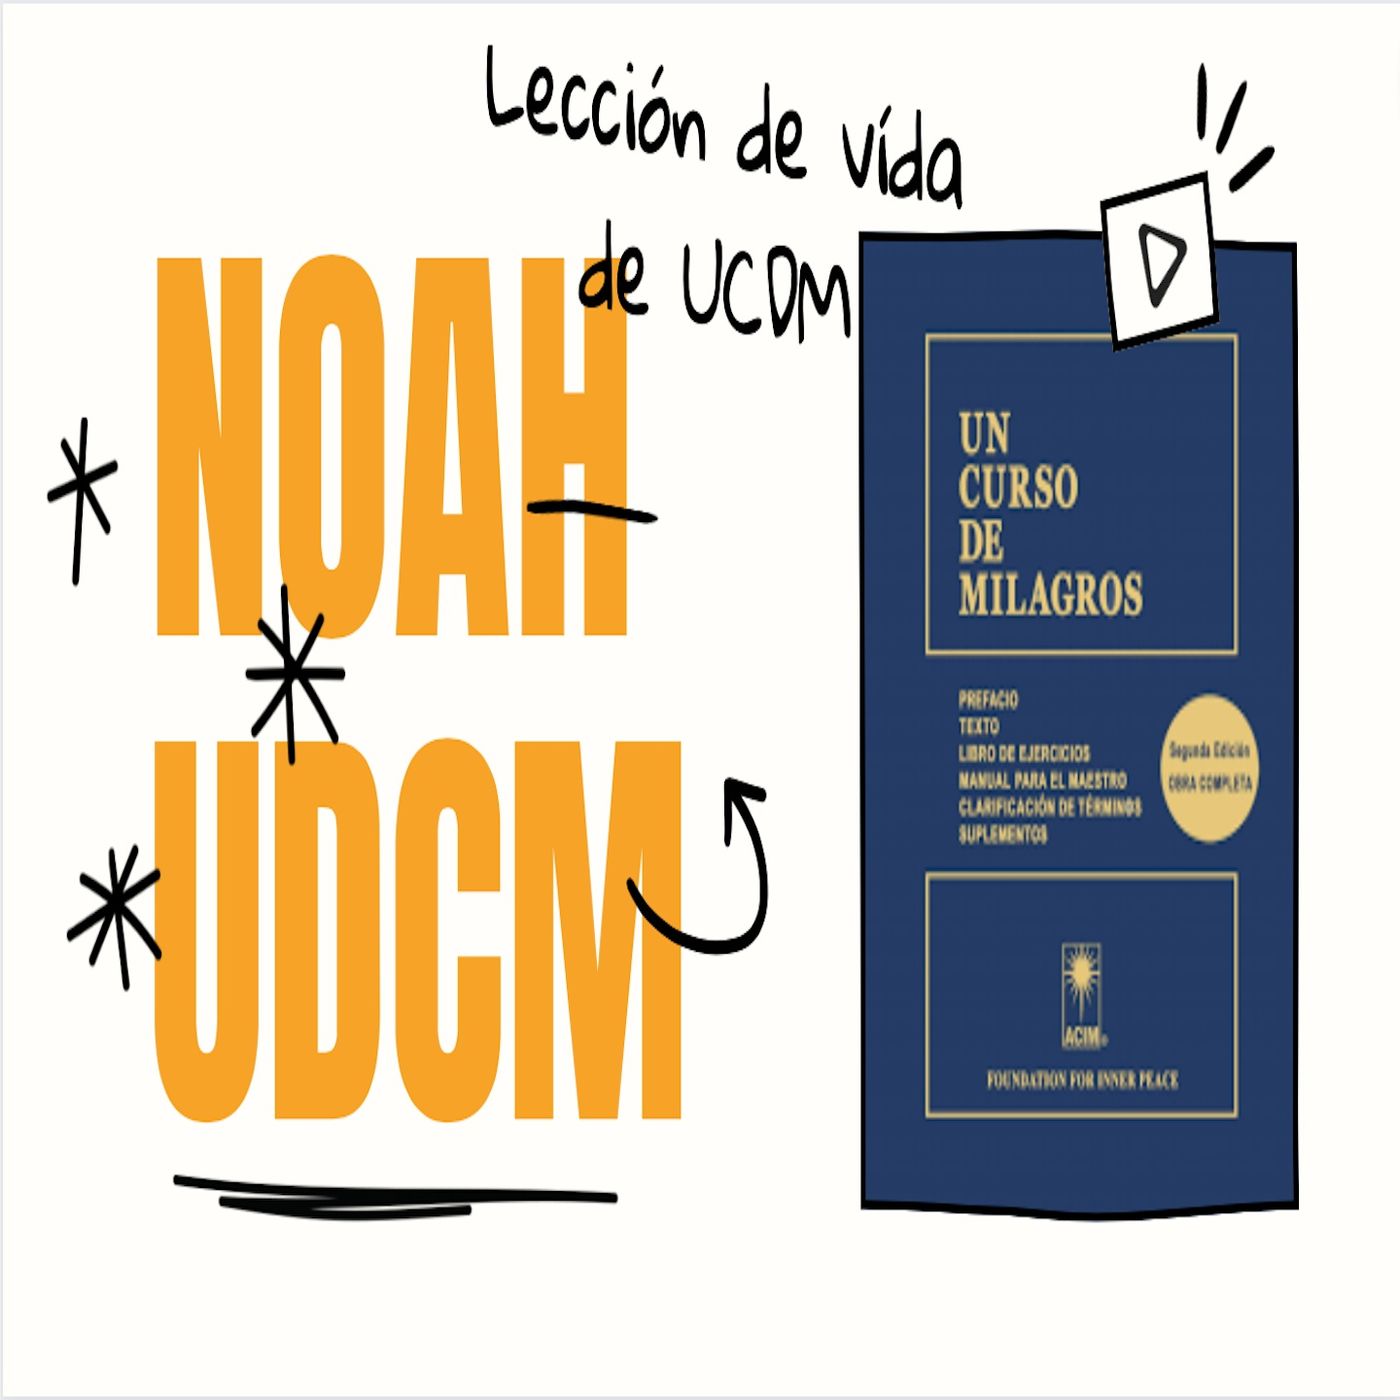 UCDM by Noah